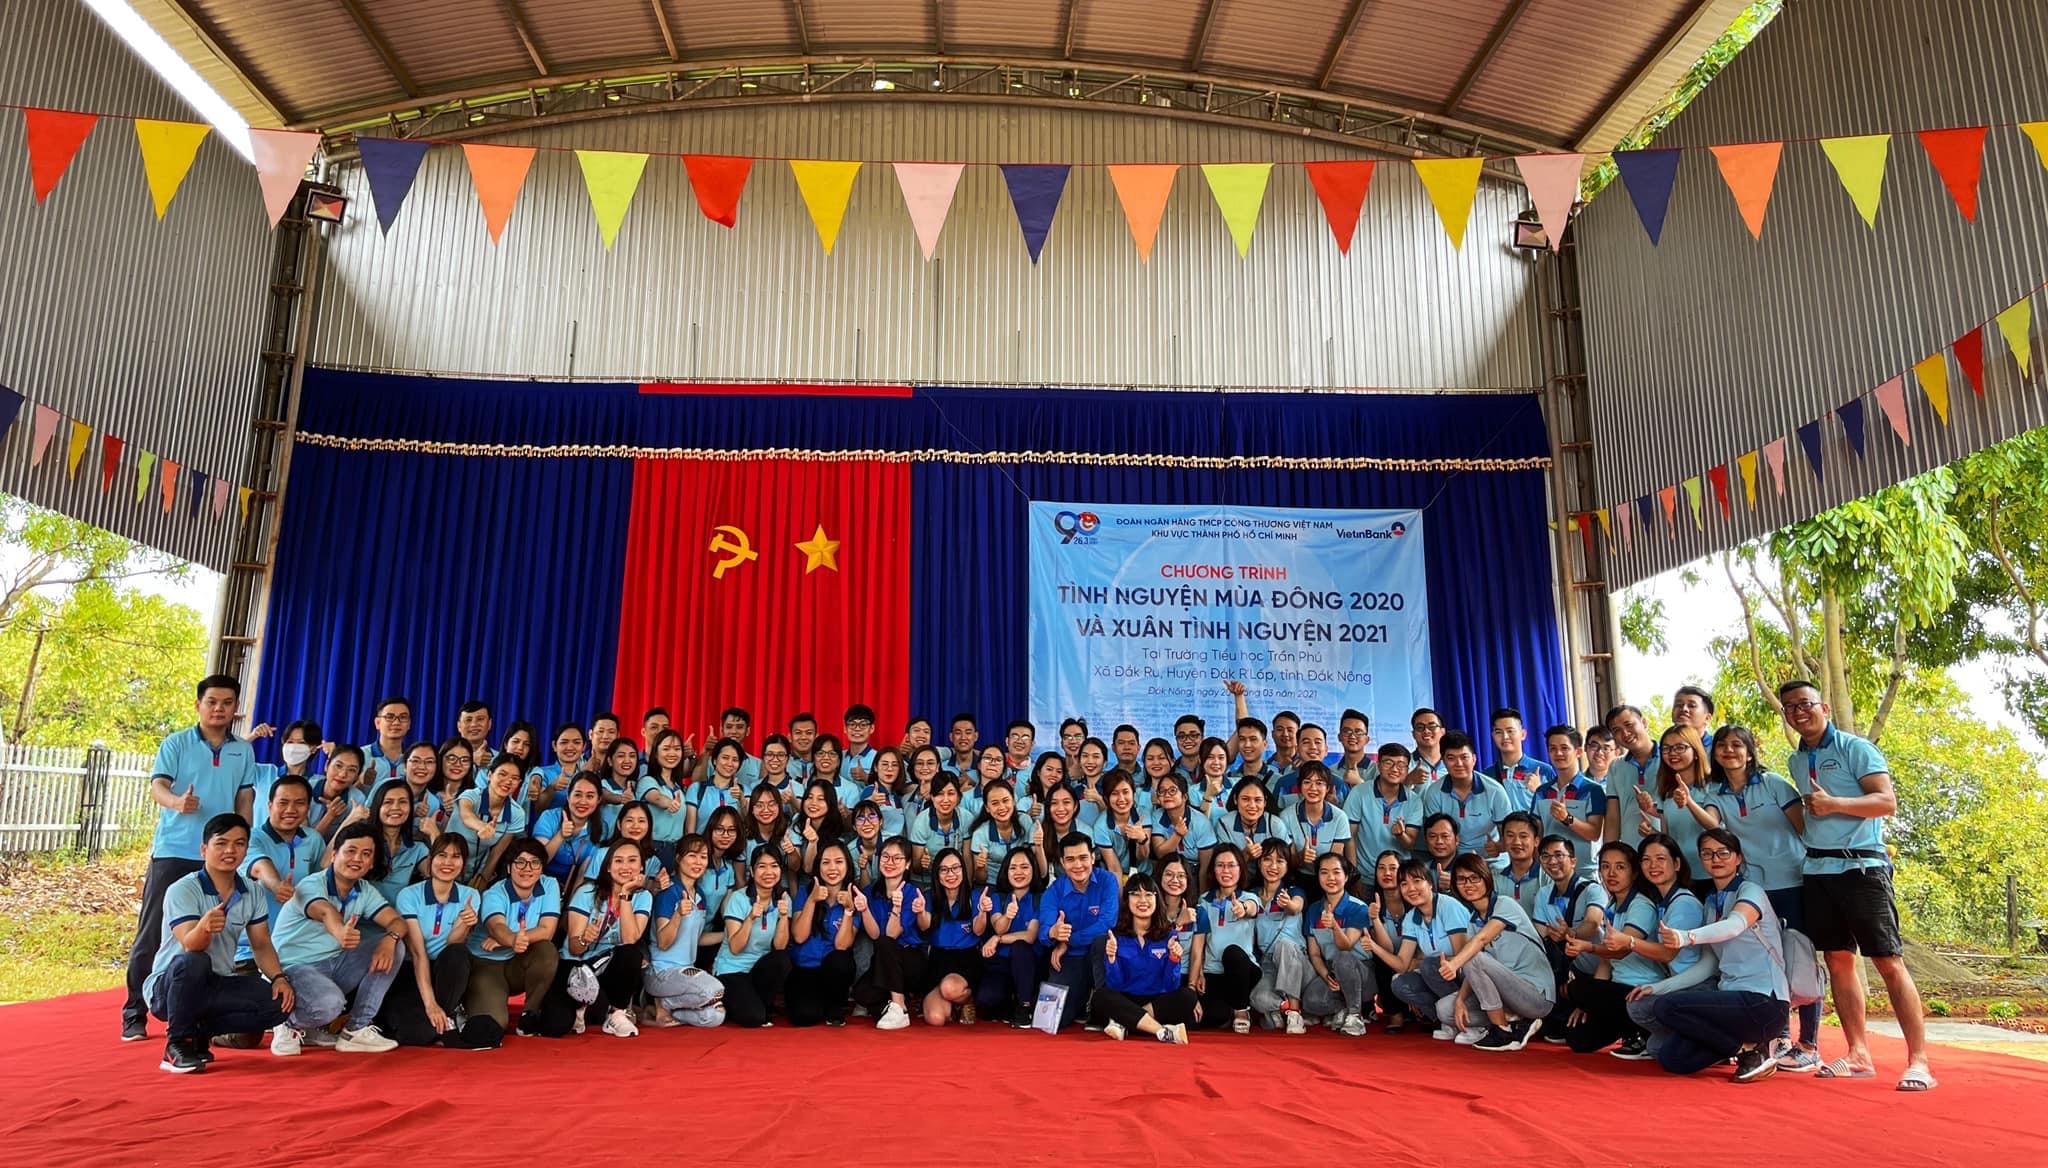 Chi đoàn VietinBank AMC tổ chức các hoạt động ý nghĩa chào mừng 90 năm ngày thành lập Đoàn Thanh niên Cộng sản Hồ Chí Minh (26/3/1931 – 26/3/2021)